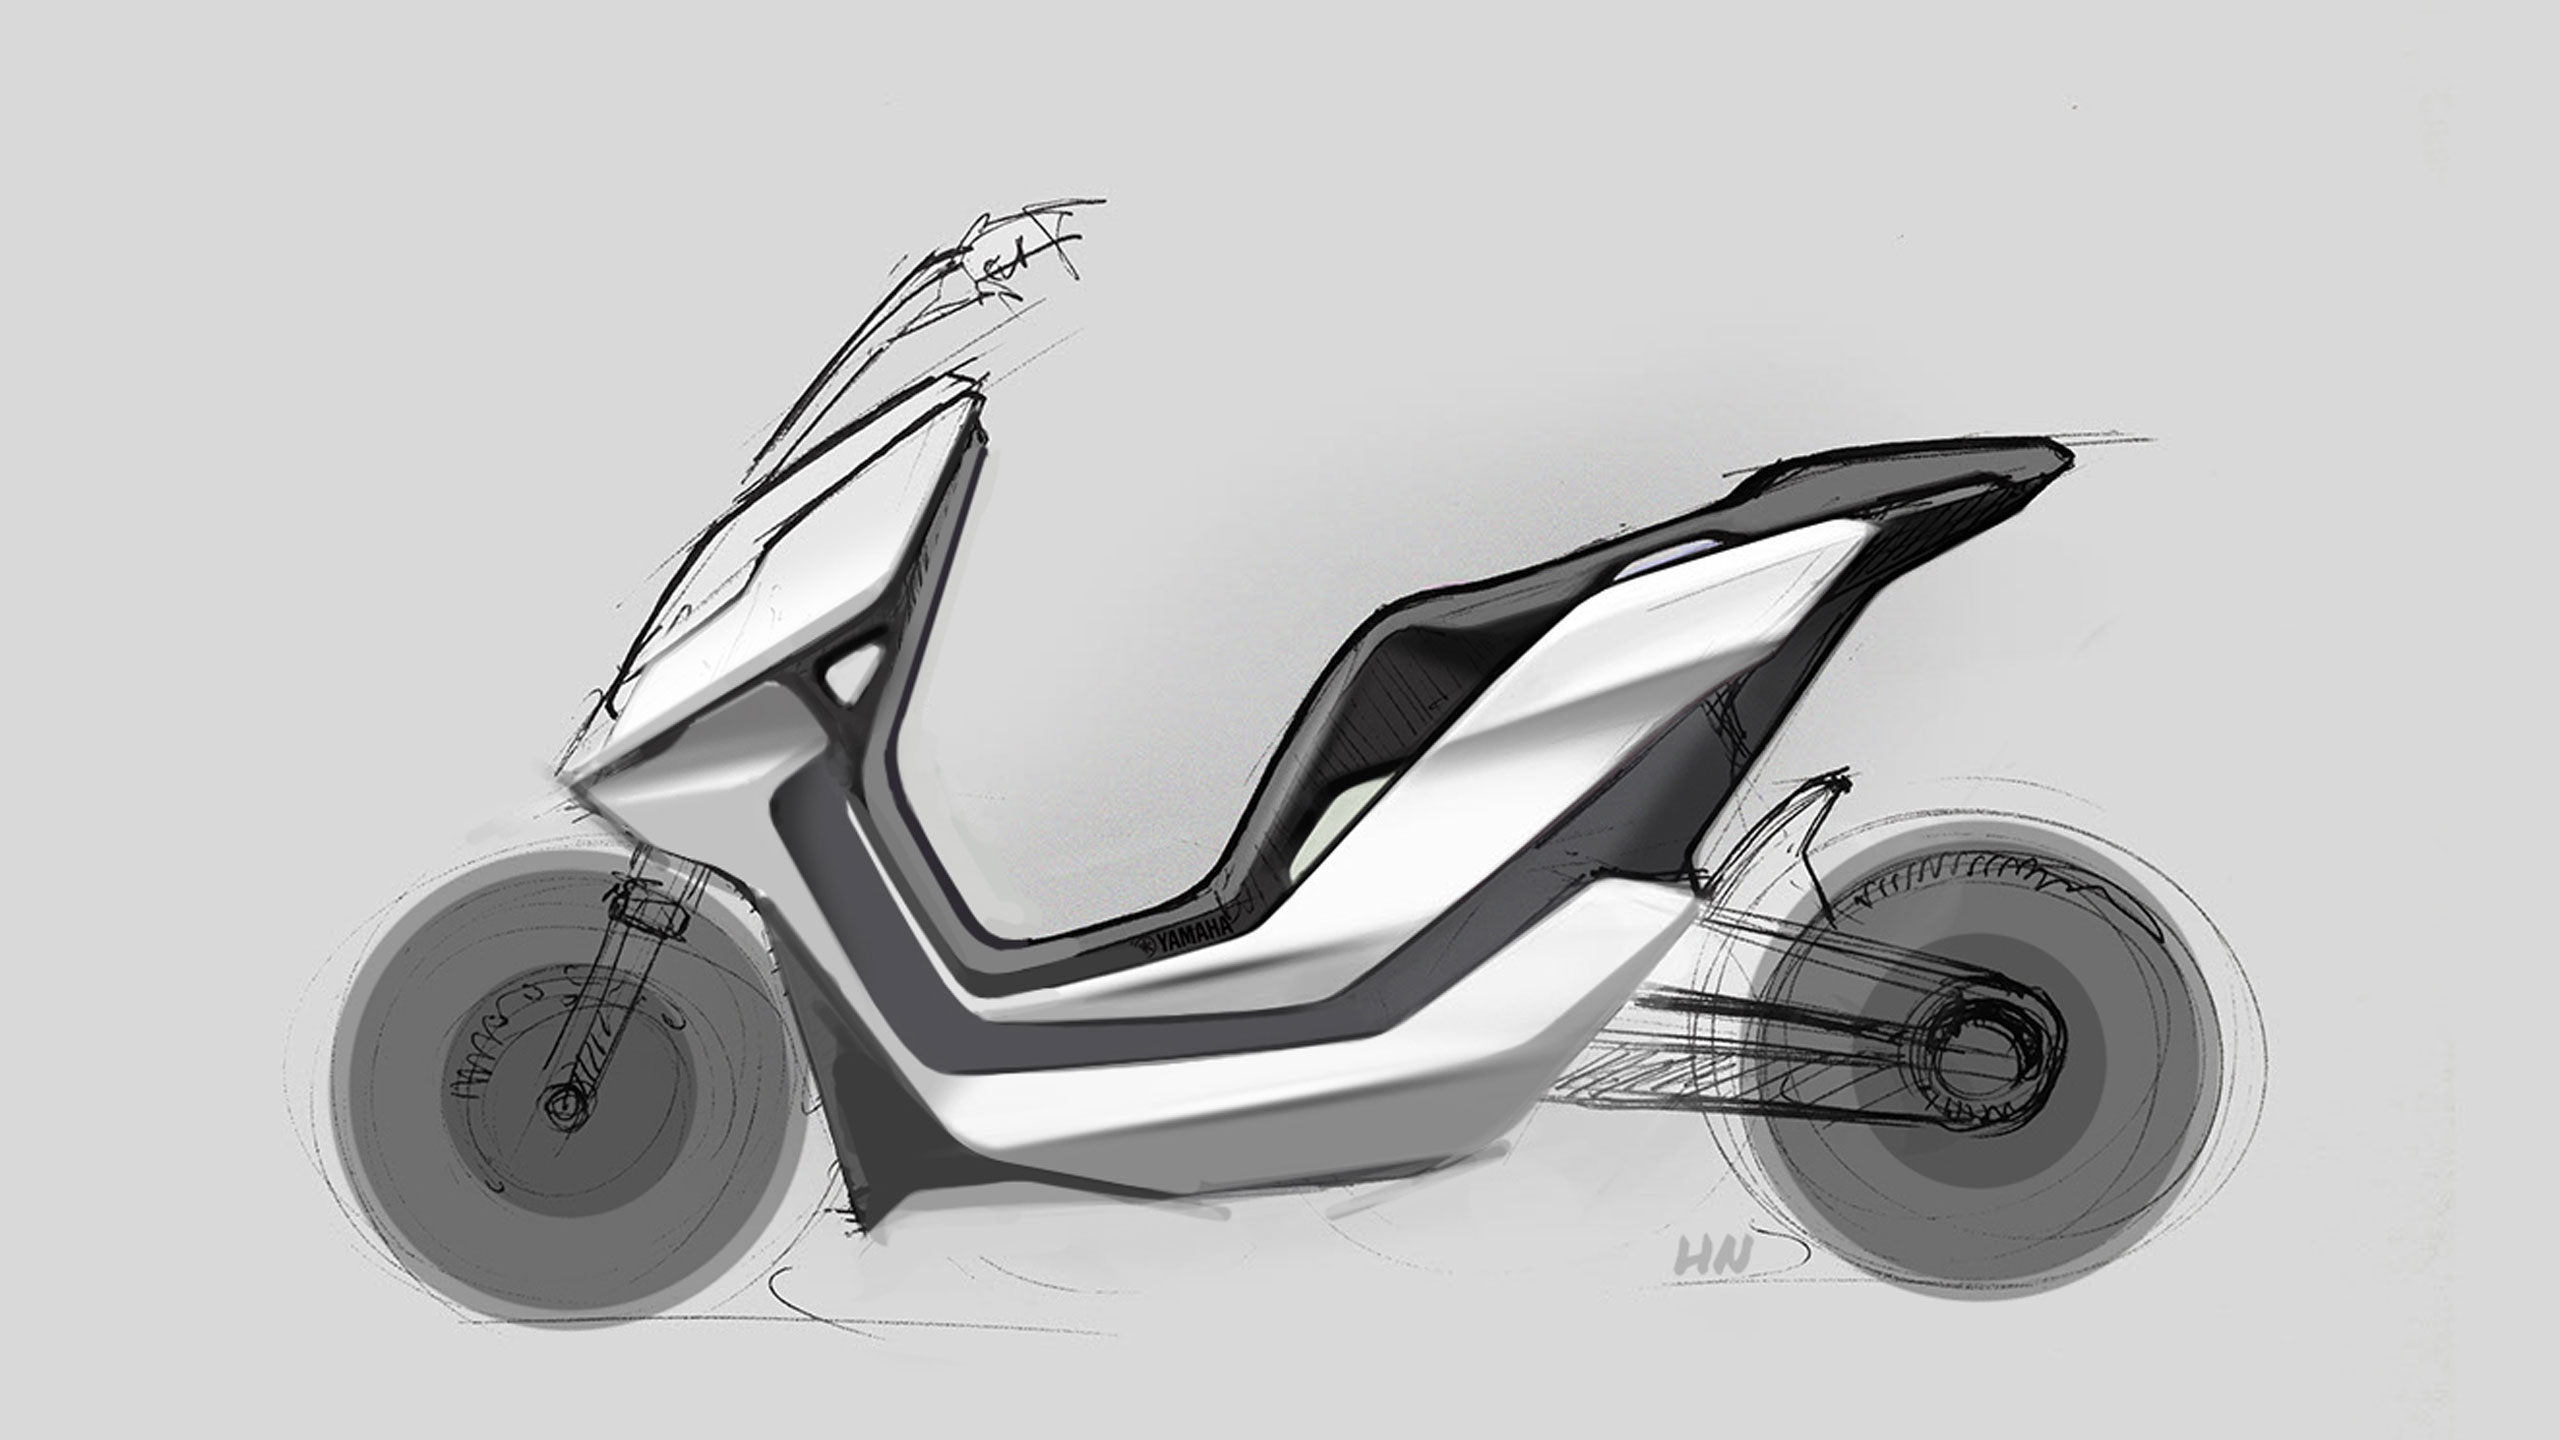 Motorraddesign, Konzeptdesign für einen E-Scooter